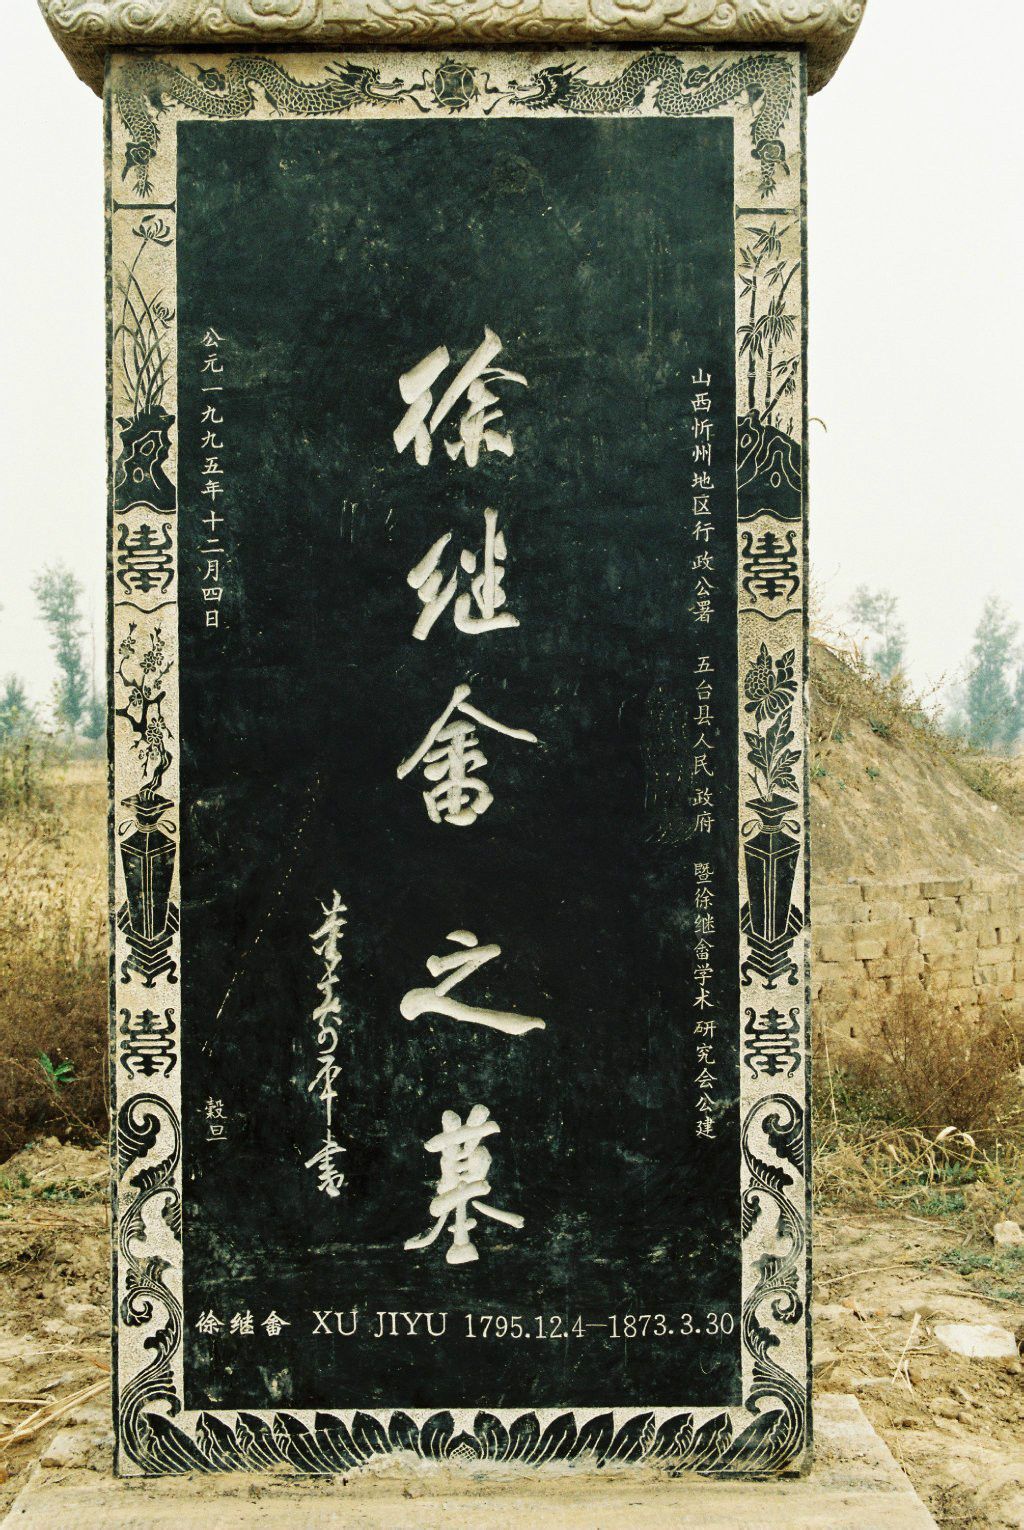 1991年重修徐繼畲之墓